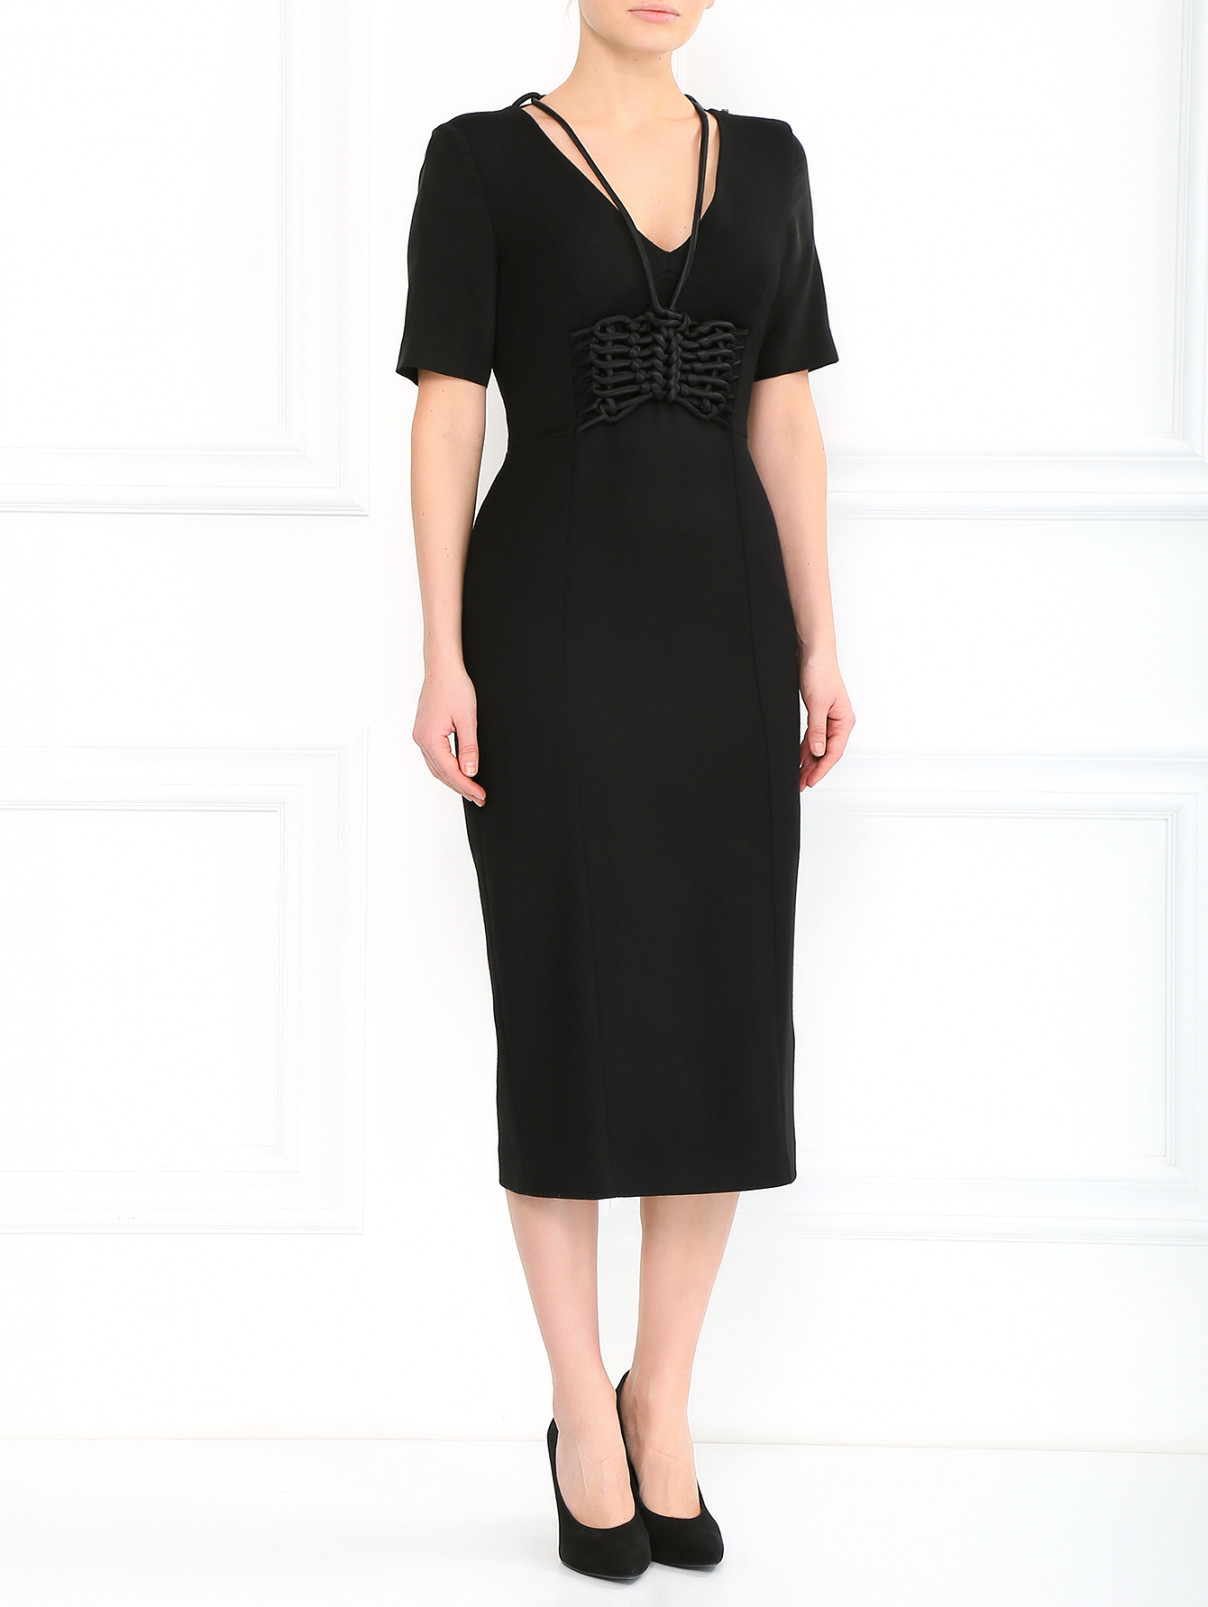 Платье из шерсти с декоративной шнуровкой Sportmax  –  Модель Общий вид  – Цвет:  Черный